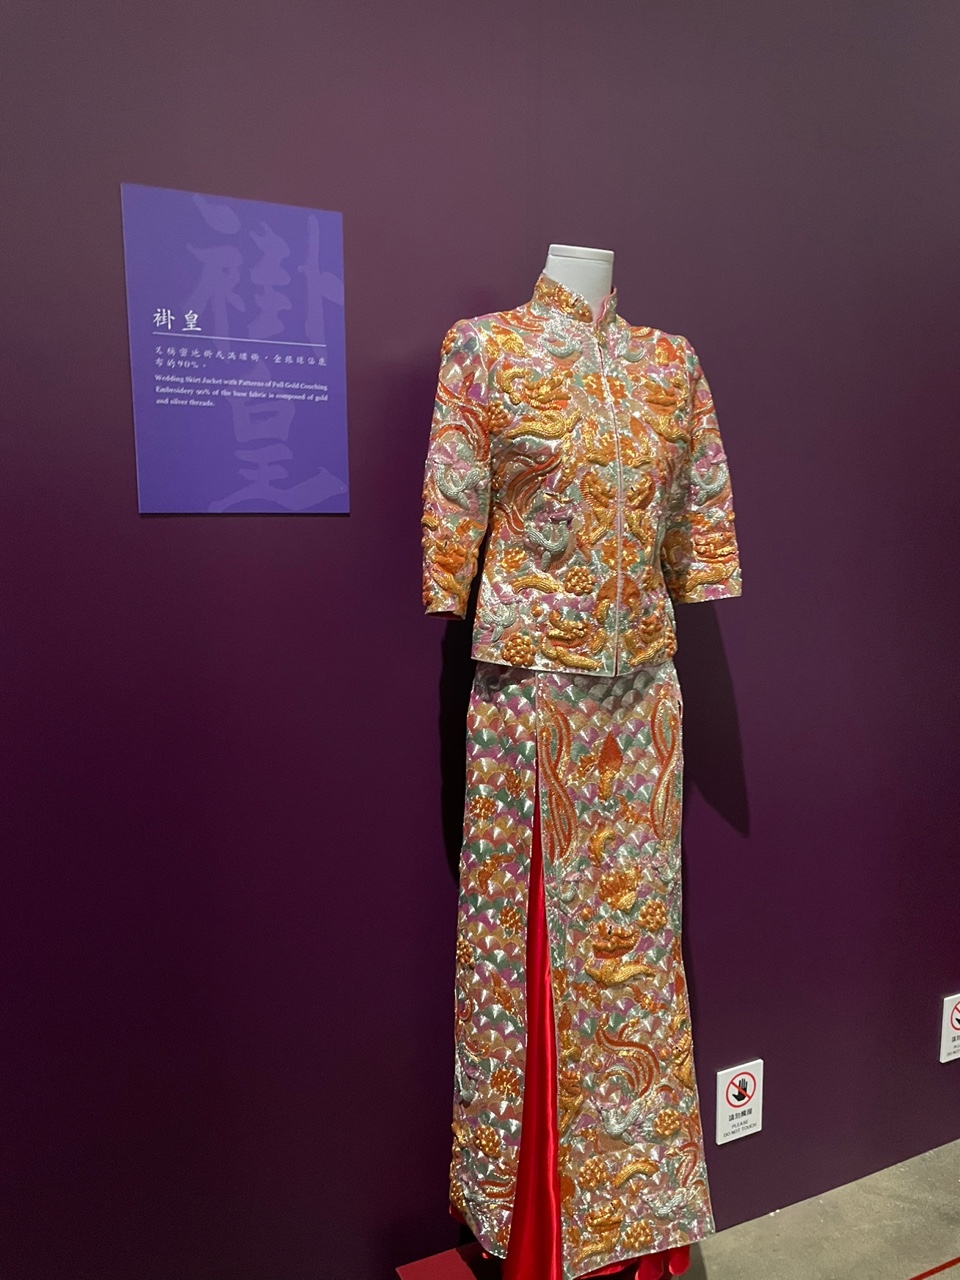 鸿运绣庄第二代传人黄国兴表示，制作一件裙褂过程繁复，需时约一年半。